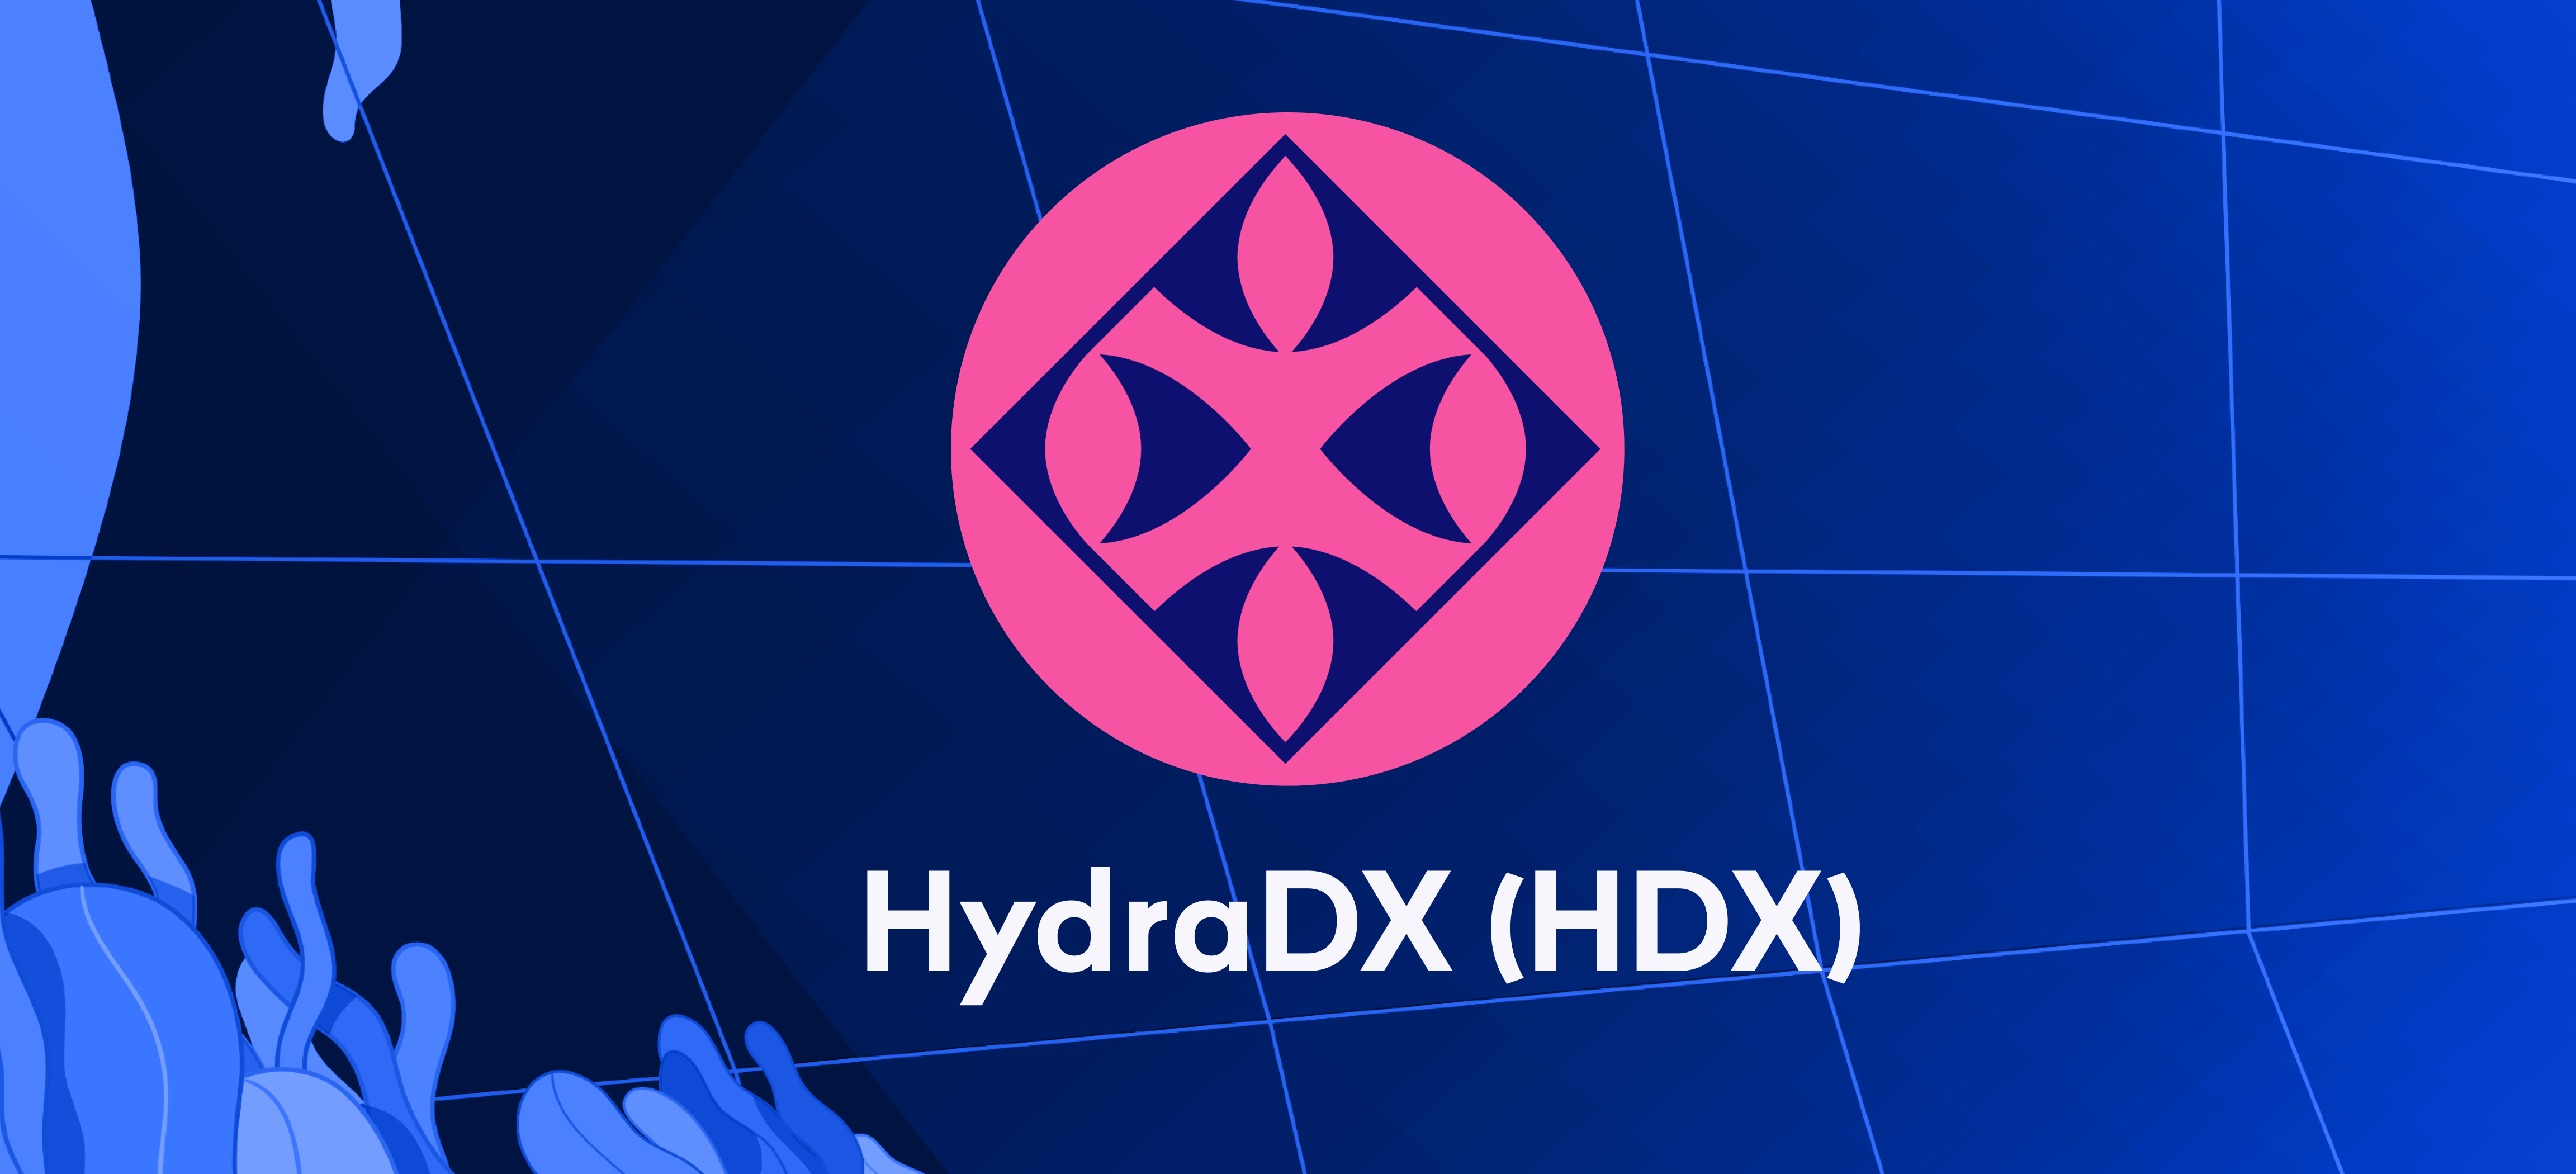 HydraDX (HDX) alım satımı 24 Ocak'ta başlıyor – şimdi para yatırın!